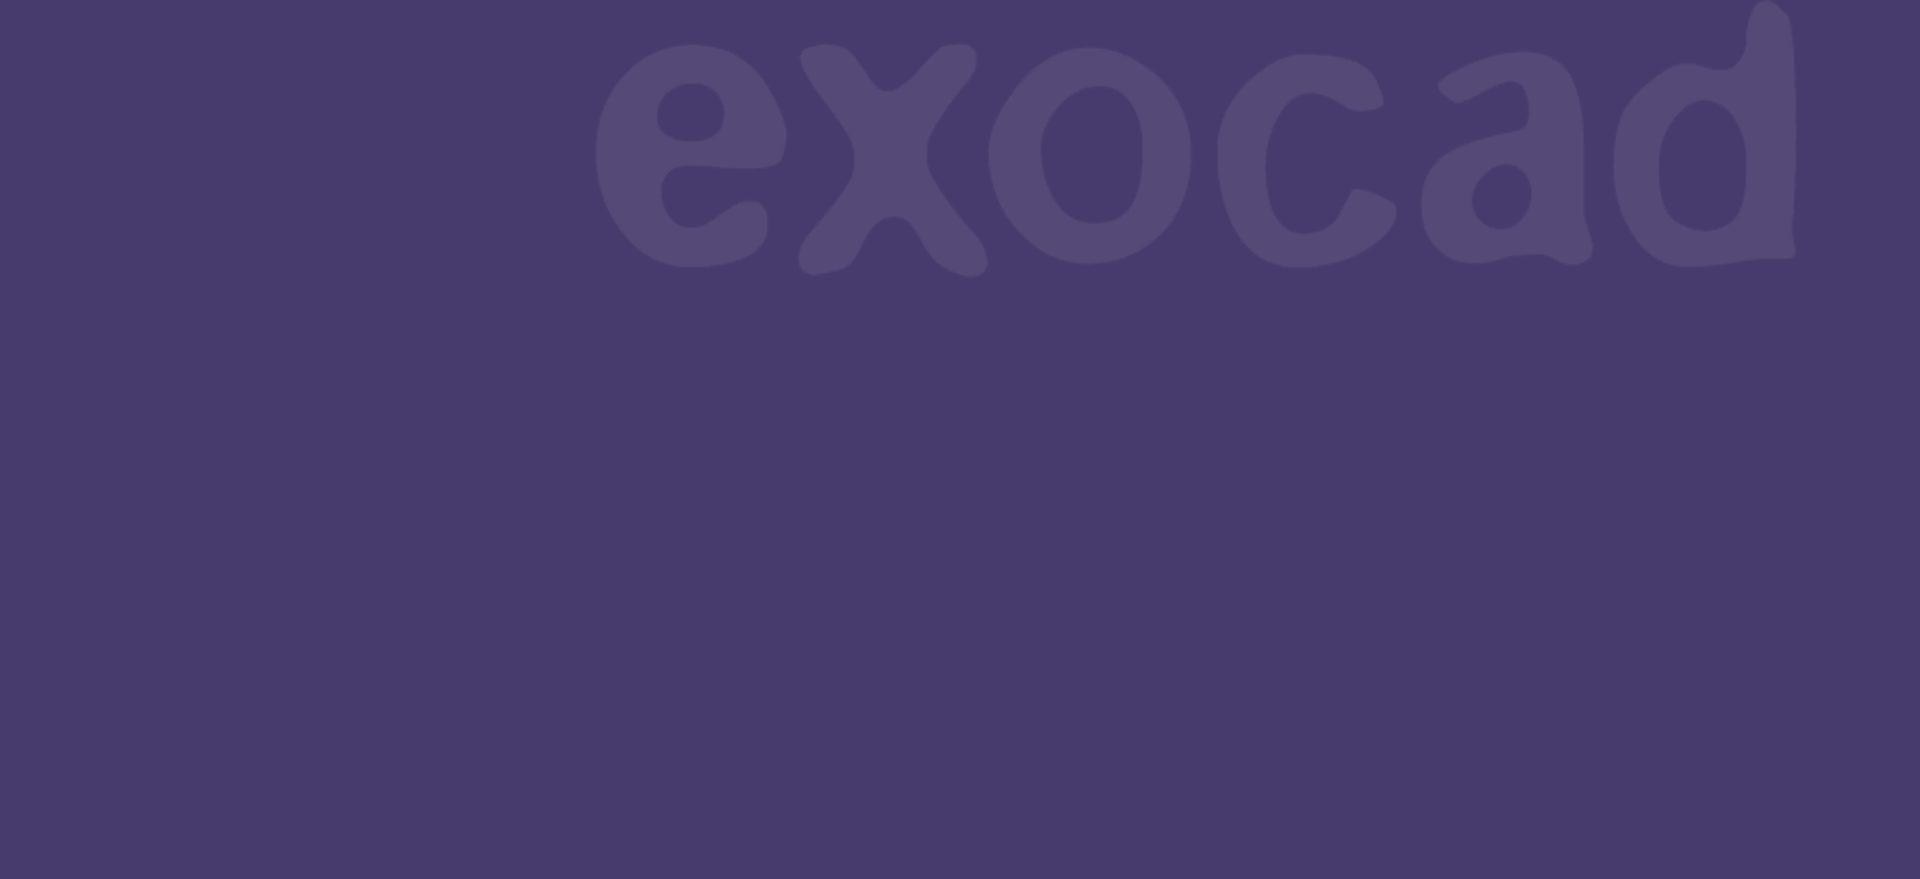 exocad_banner